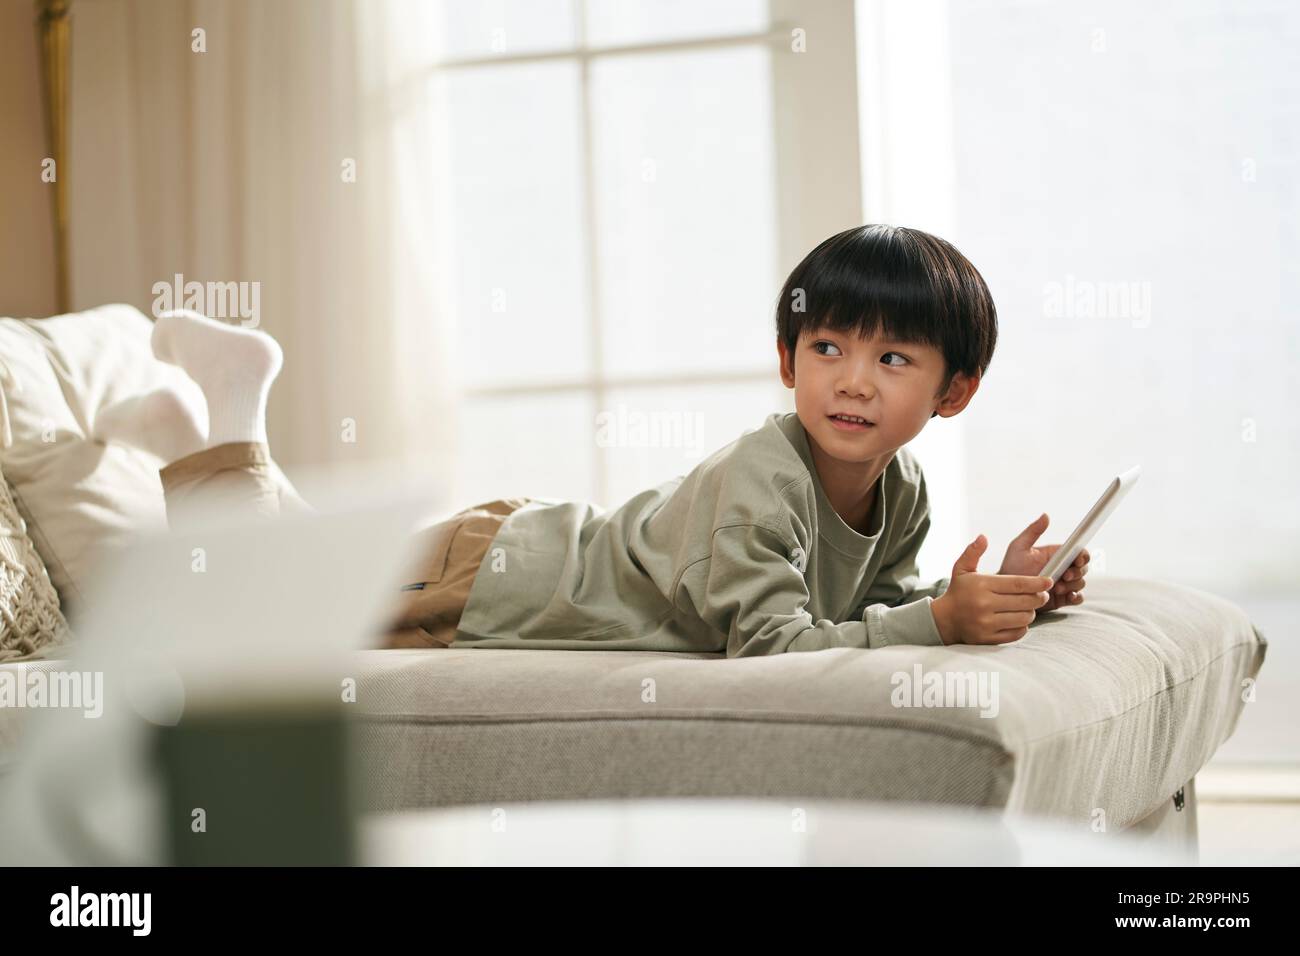 Süßer kleiner asiatischer Junge, der zu Hause vorne auf dem Familientisch liegt und ein digitales Tablet hält Stockfoto